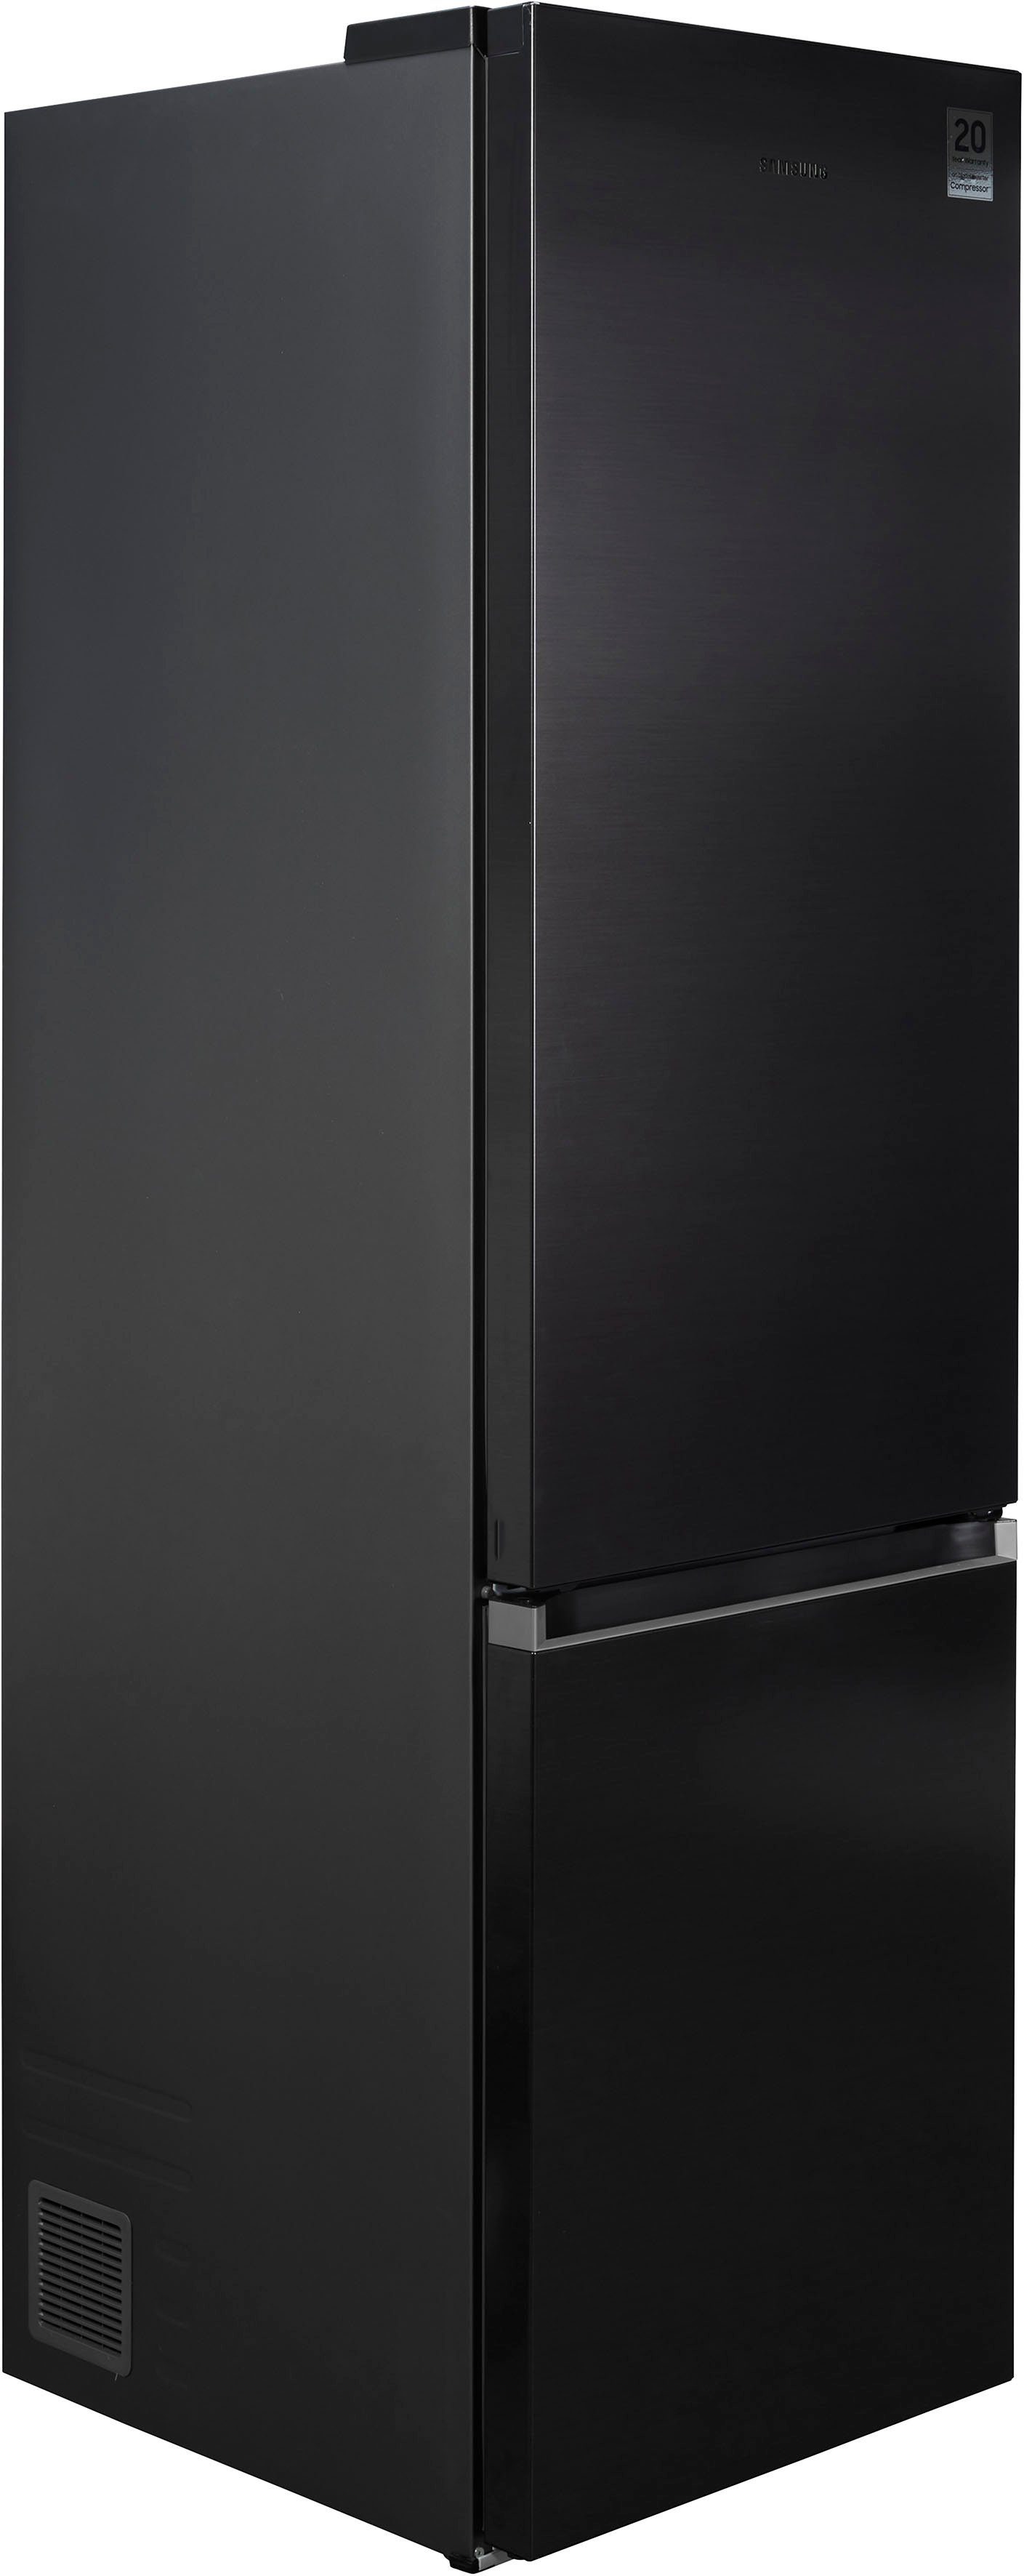 Samsung Kühl-/Gefrierkombination RL38T607BB1, 203 cm breit, Jahre schwarz Garantie 59,5 cm hoch, 4 inklusive